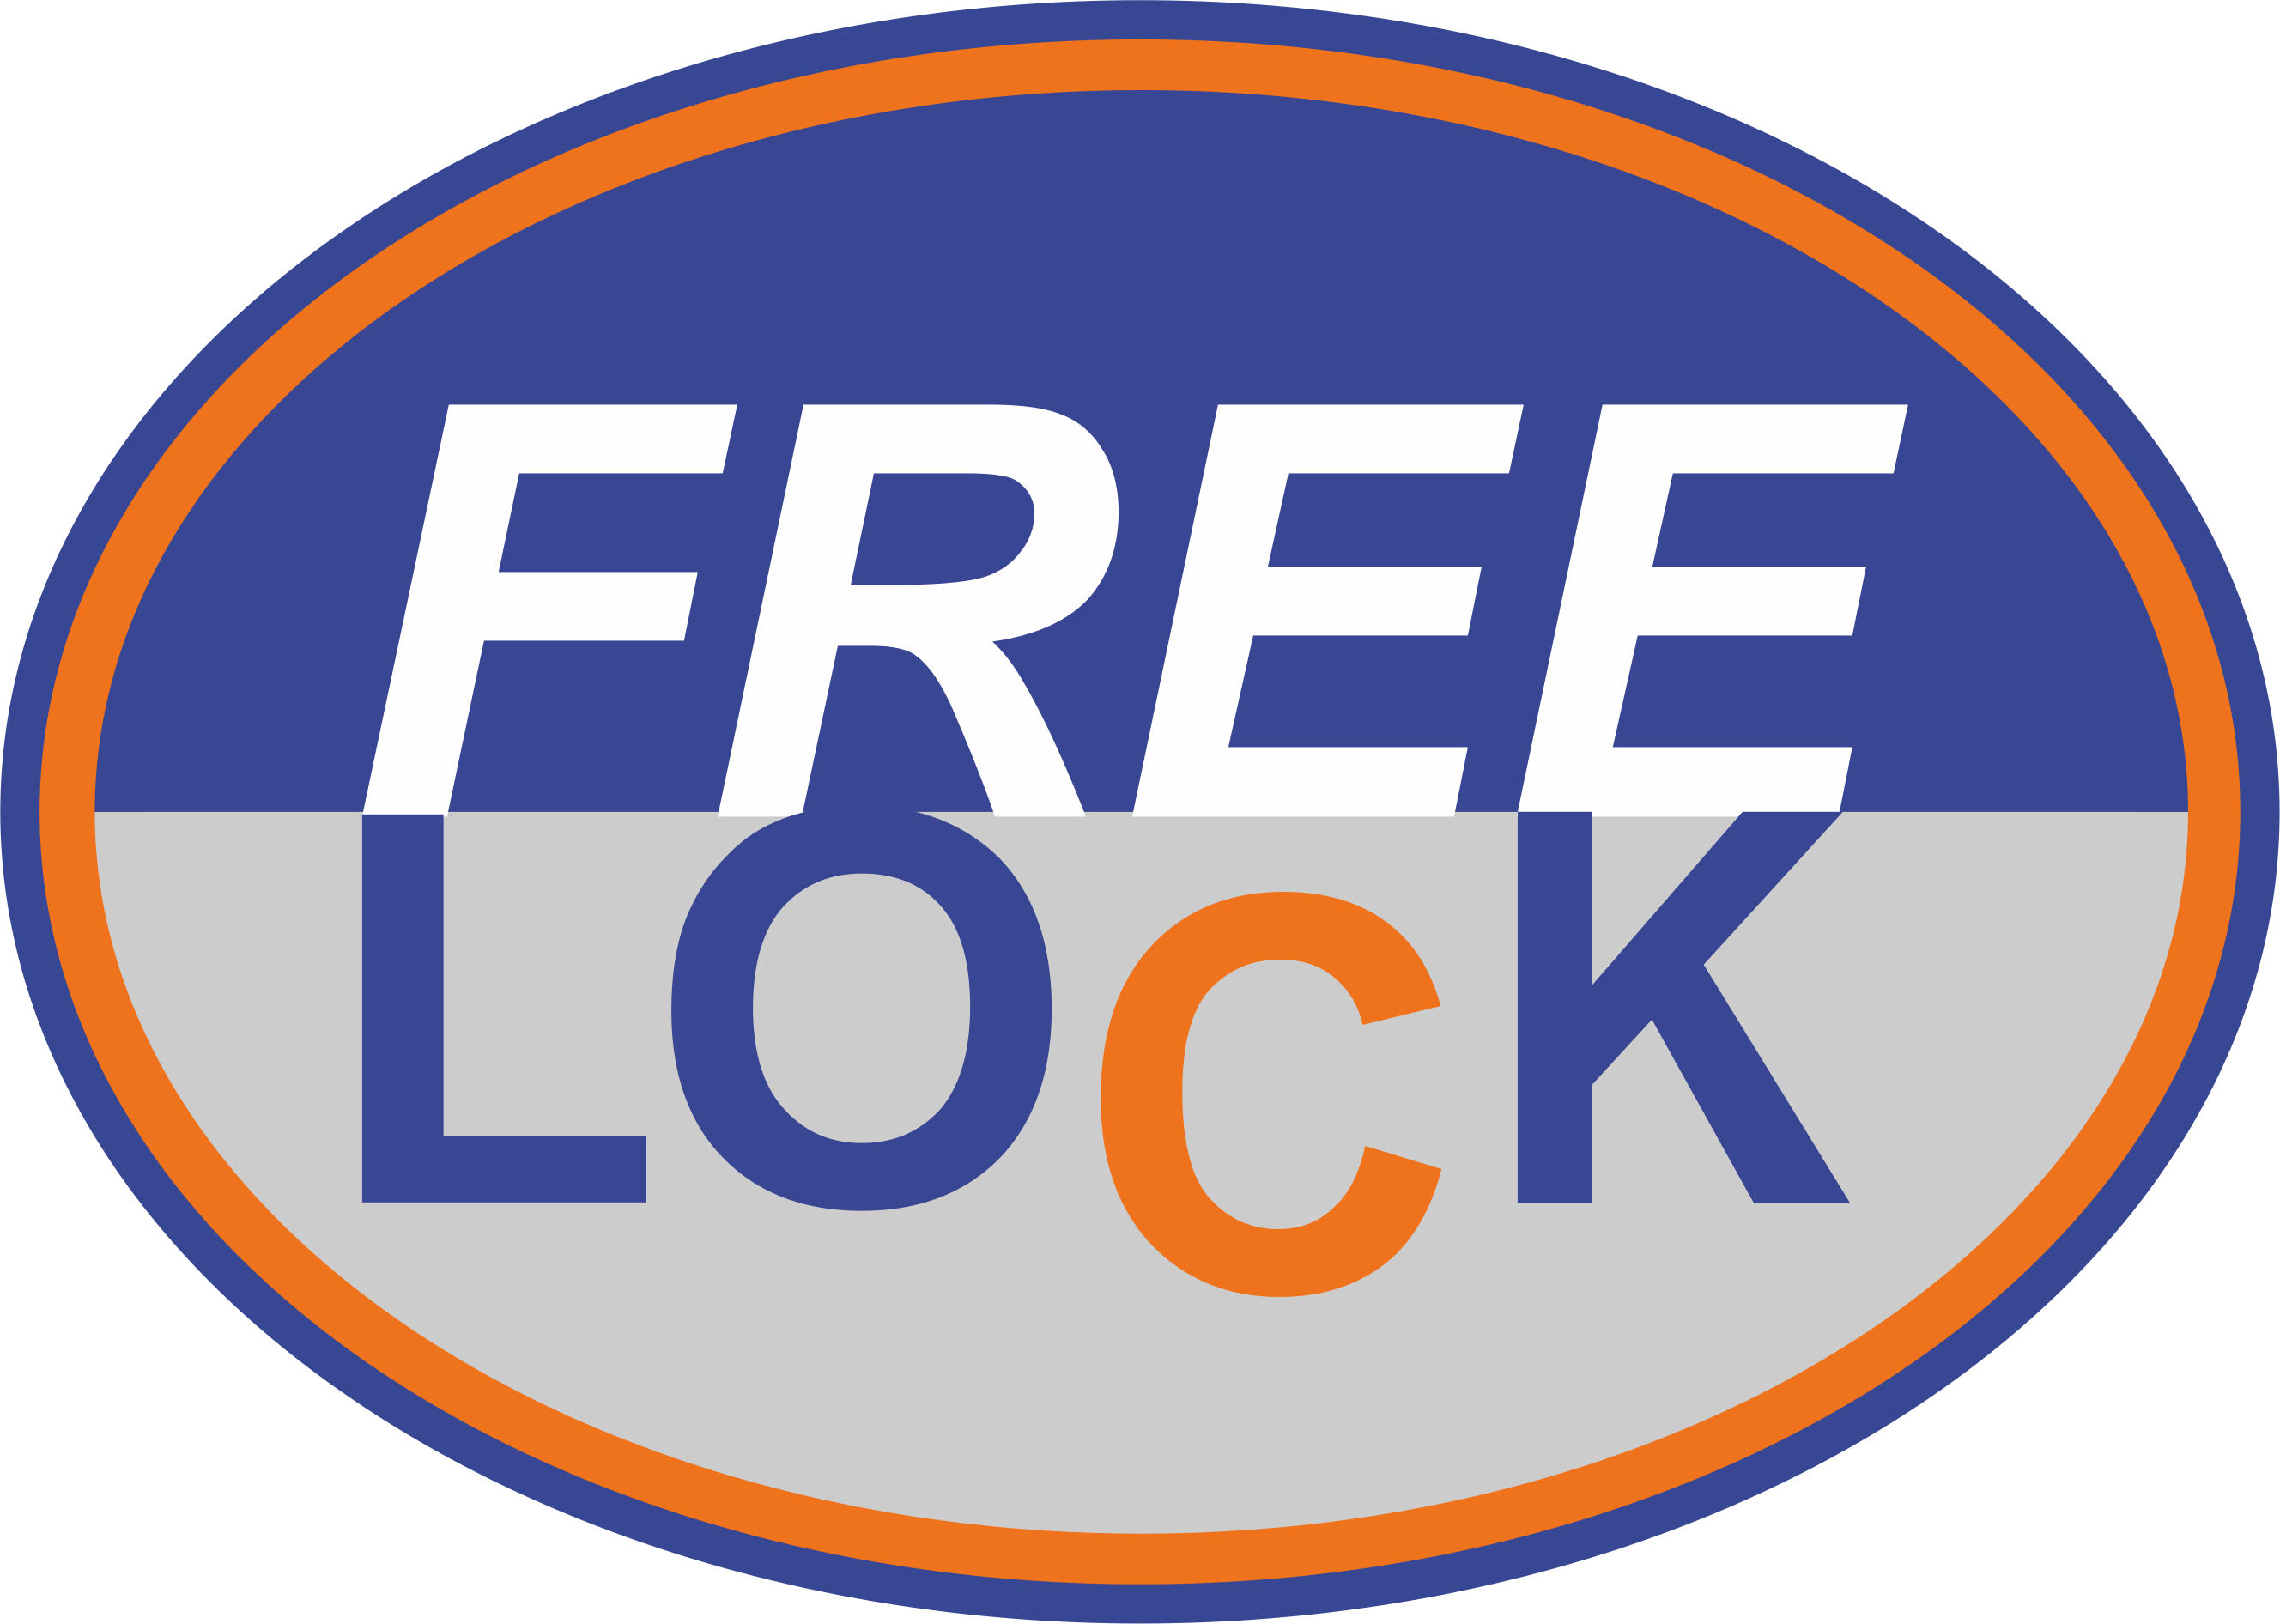 Free Lock